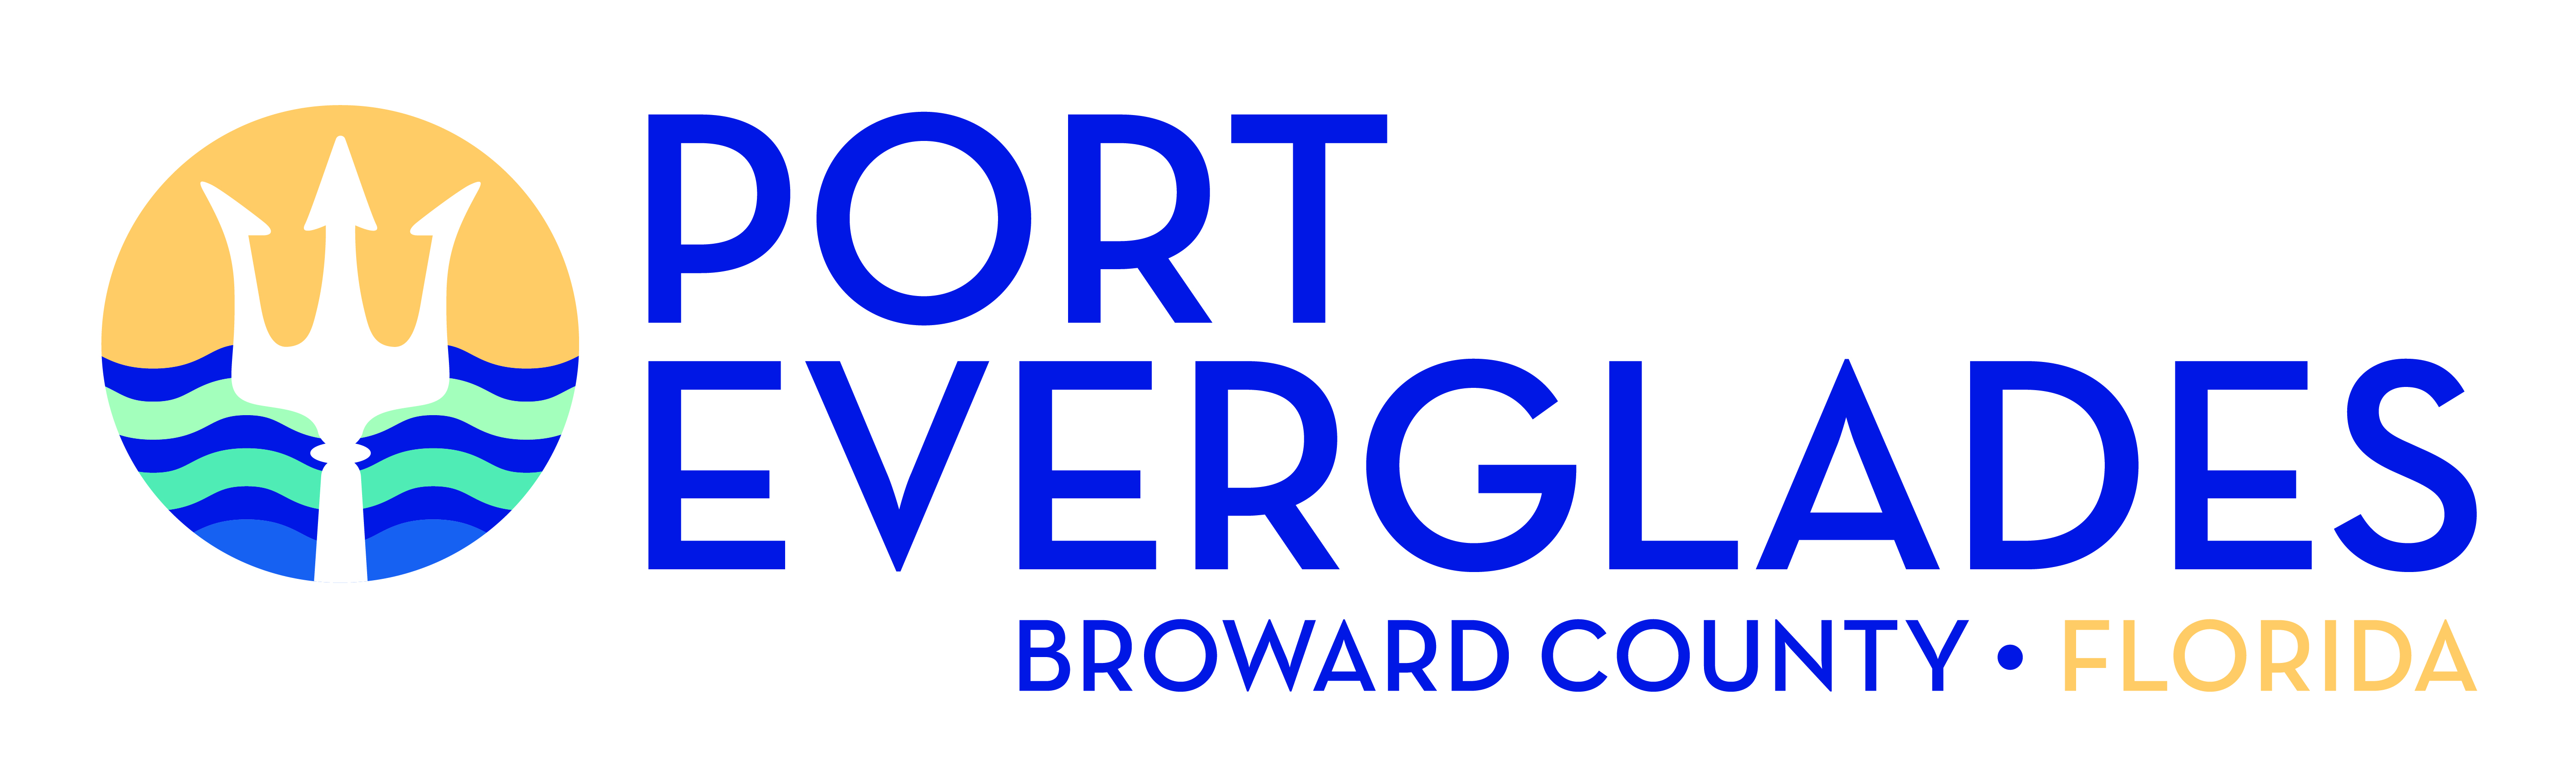 New Port Everglades logo